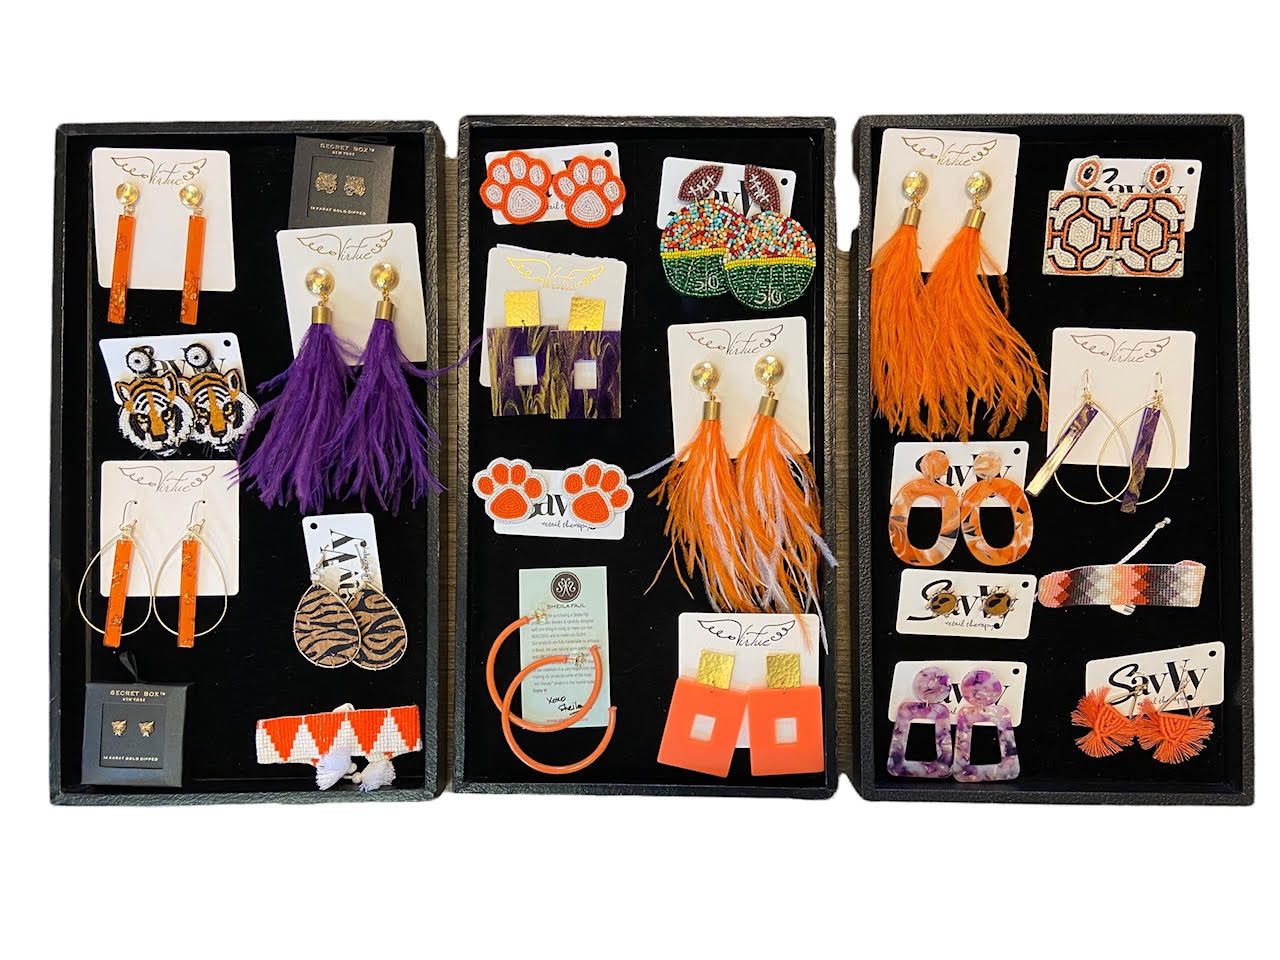 Acrylic Rectangle Earrings in orange by Virtue